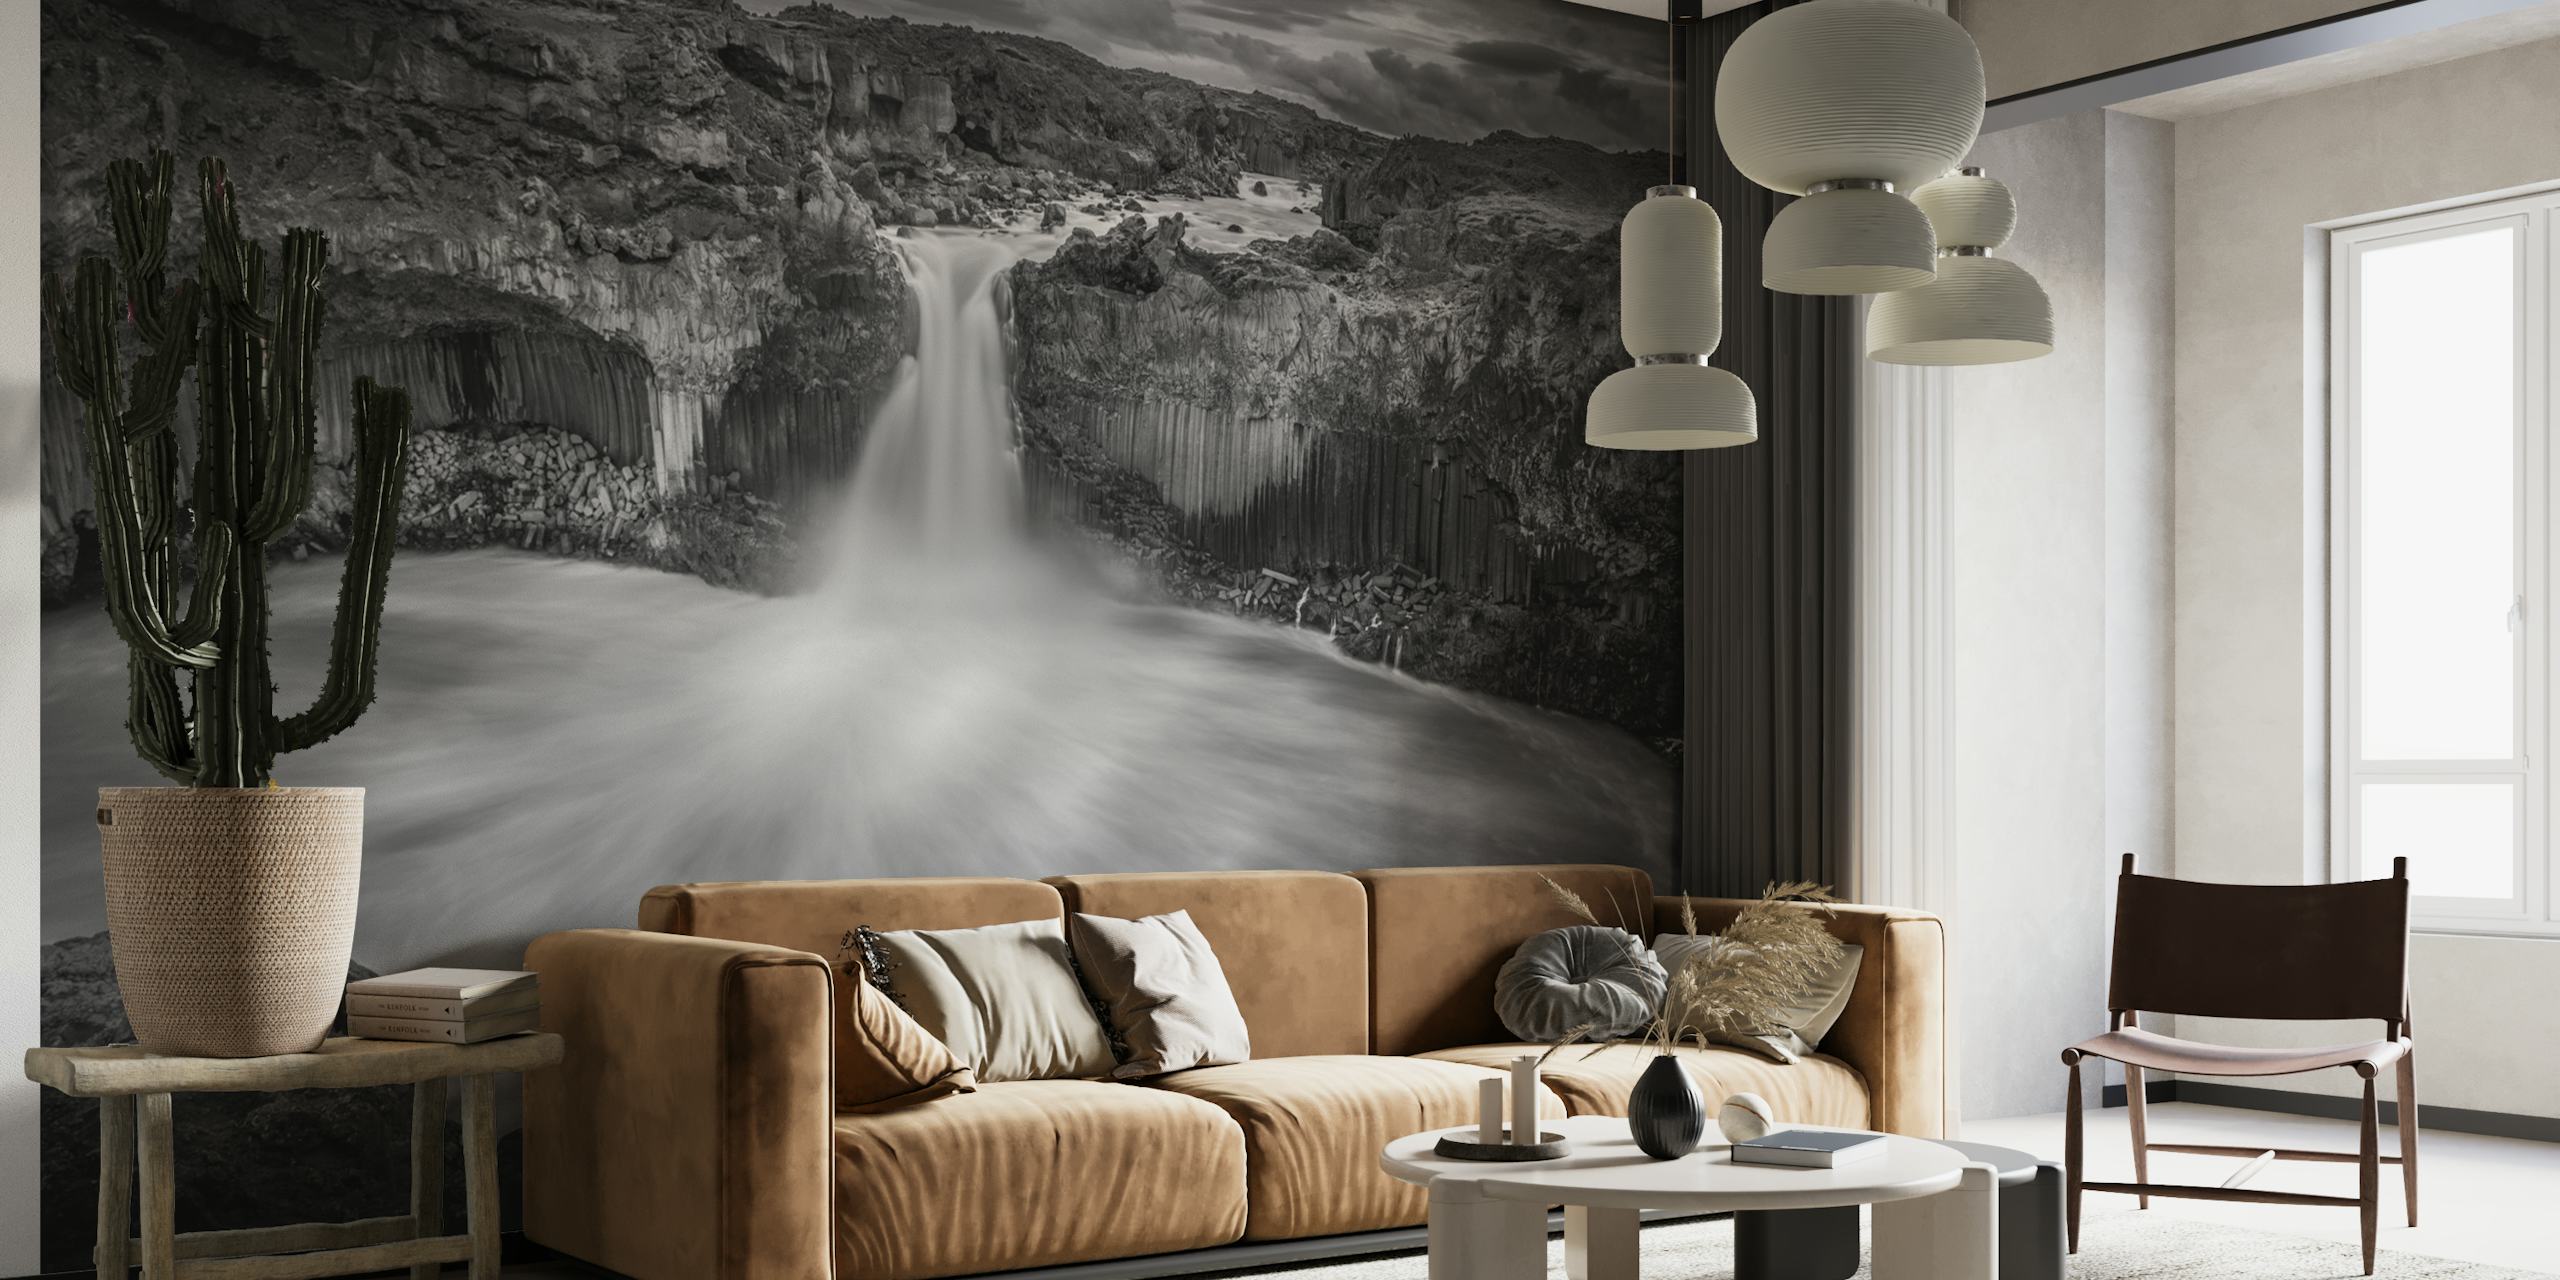 Mural de pared de cascada islandesa en blanco y negro que muestra dramáticos contrastes y la grandeza de la naturaleza.